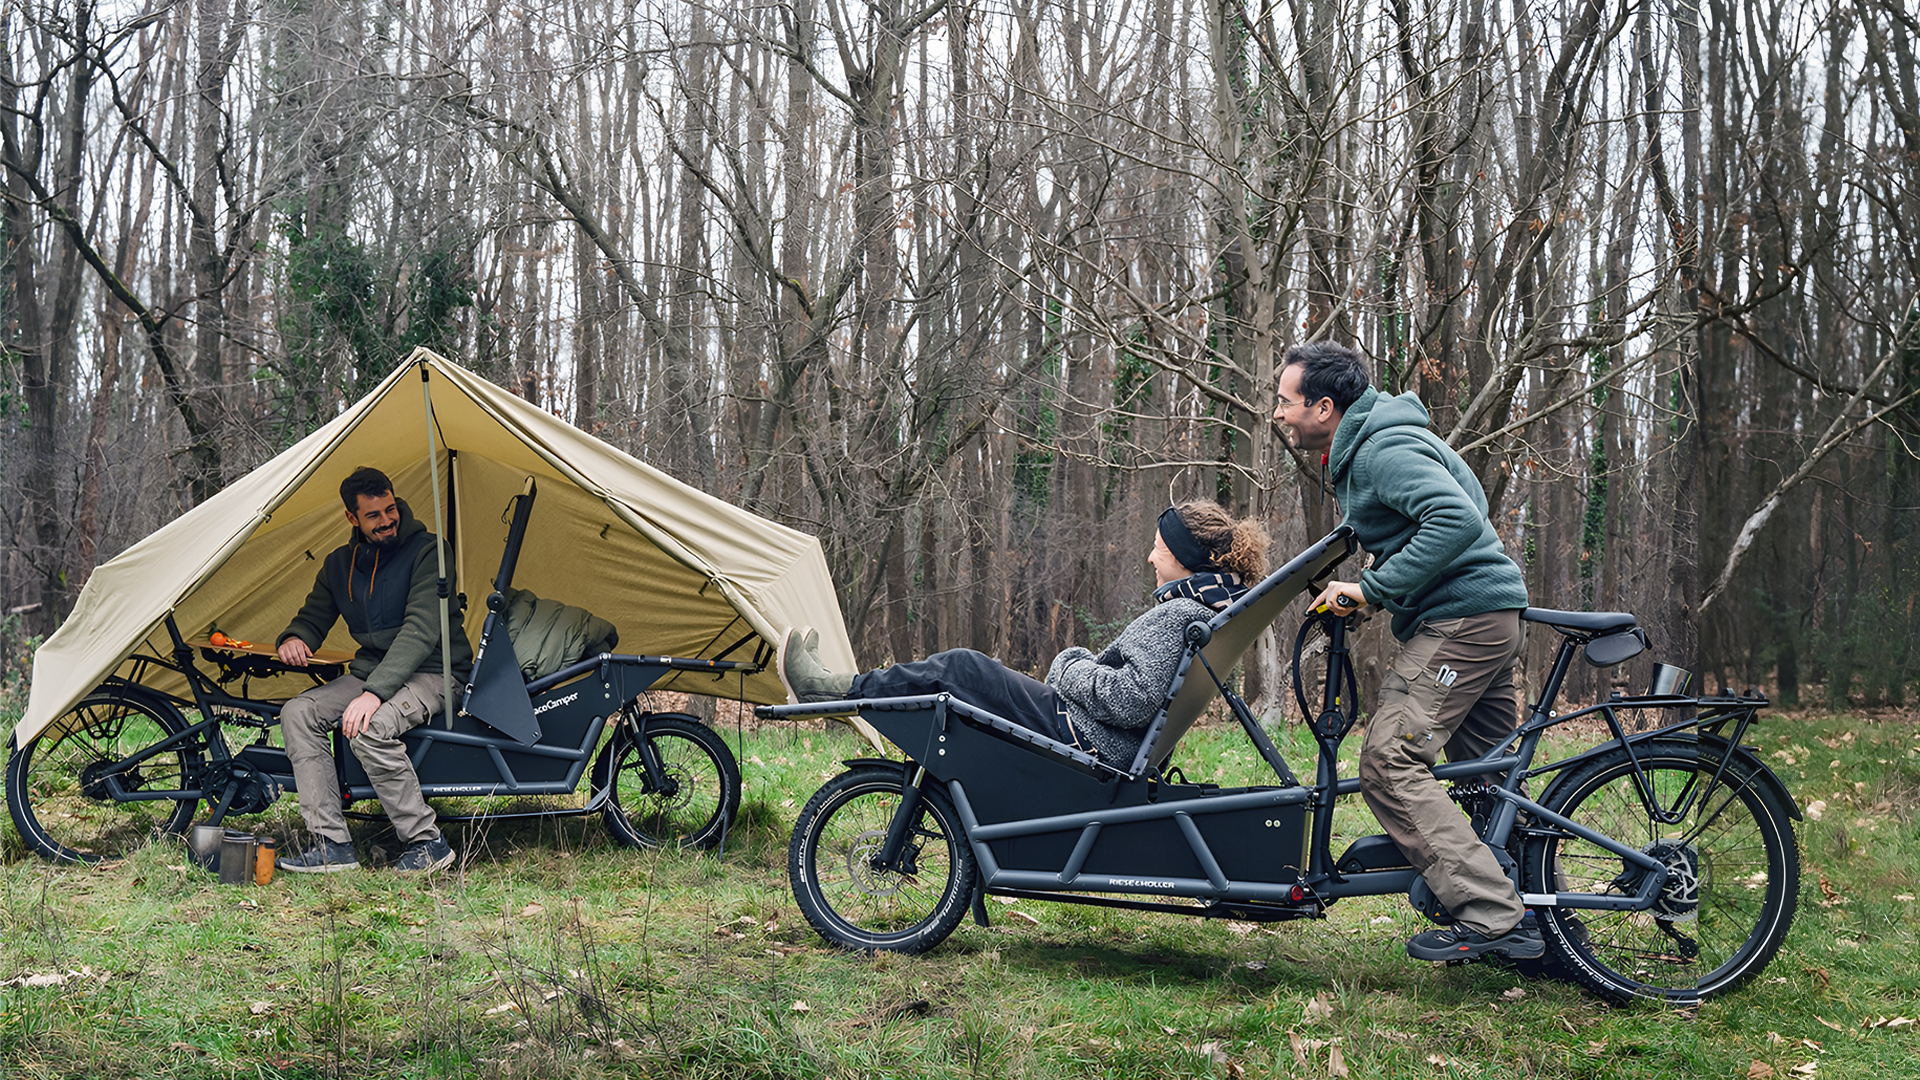 Mais cara que um CARRO novadora bicicleta elétrica se transforma em confortável barraca de camping para suas aventuras ao ar livre